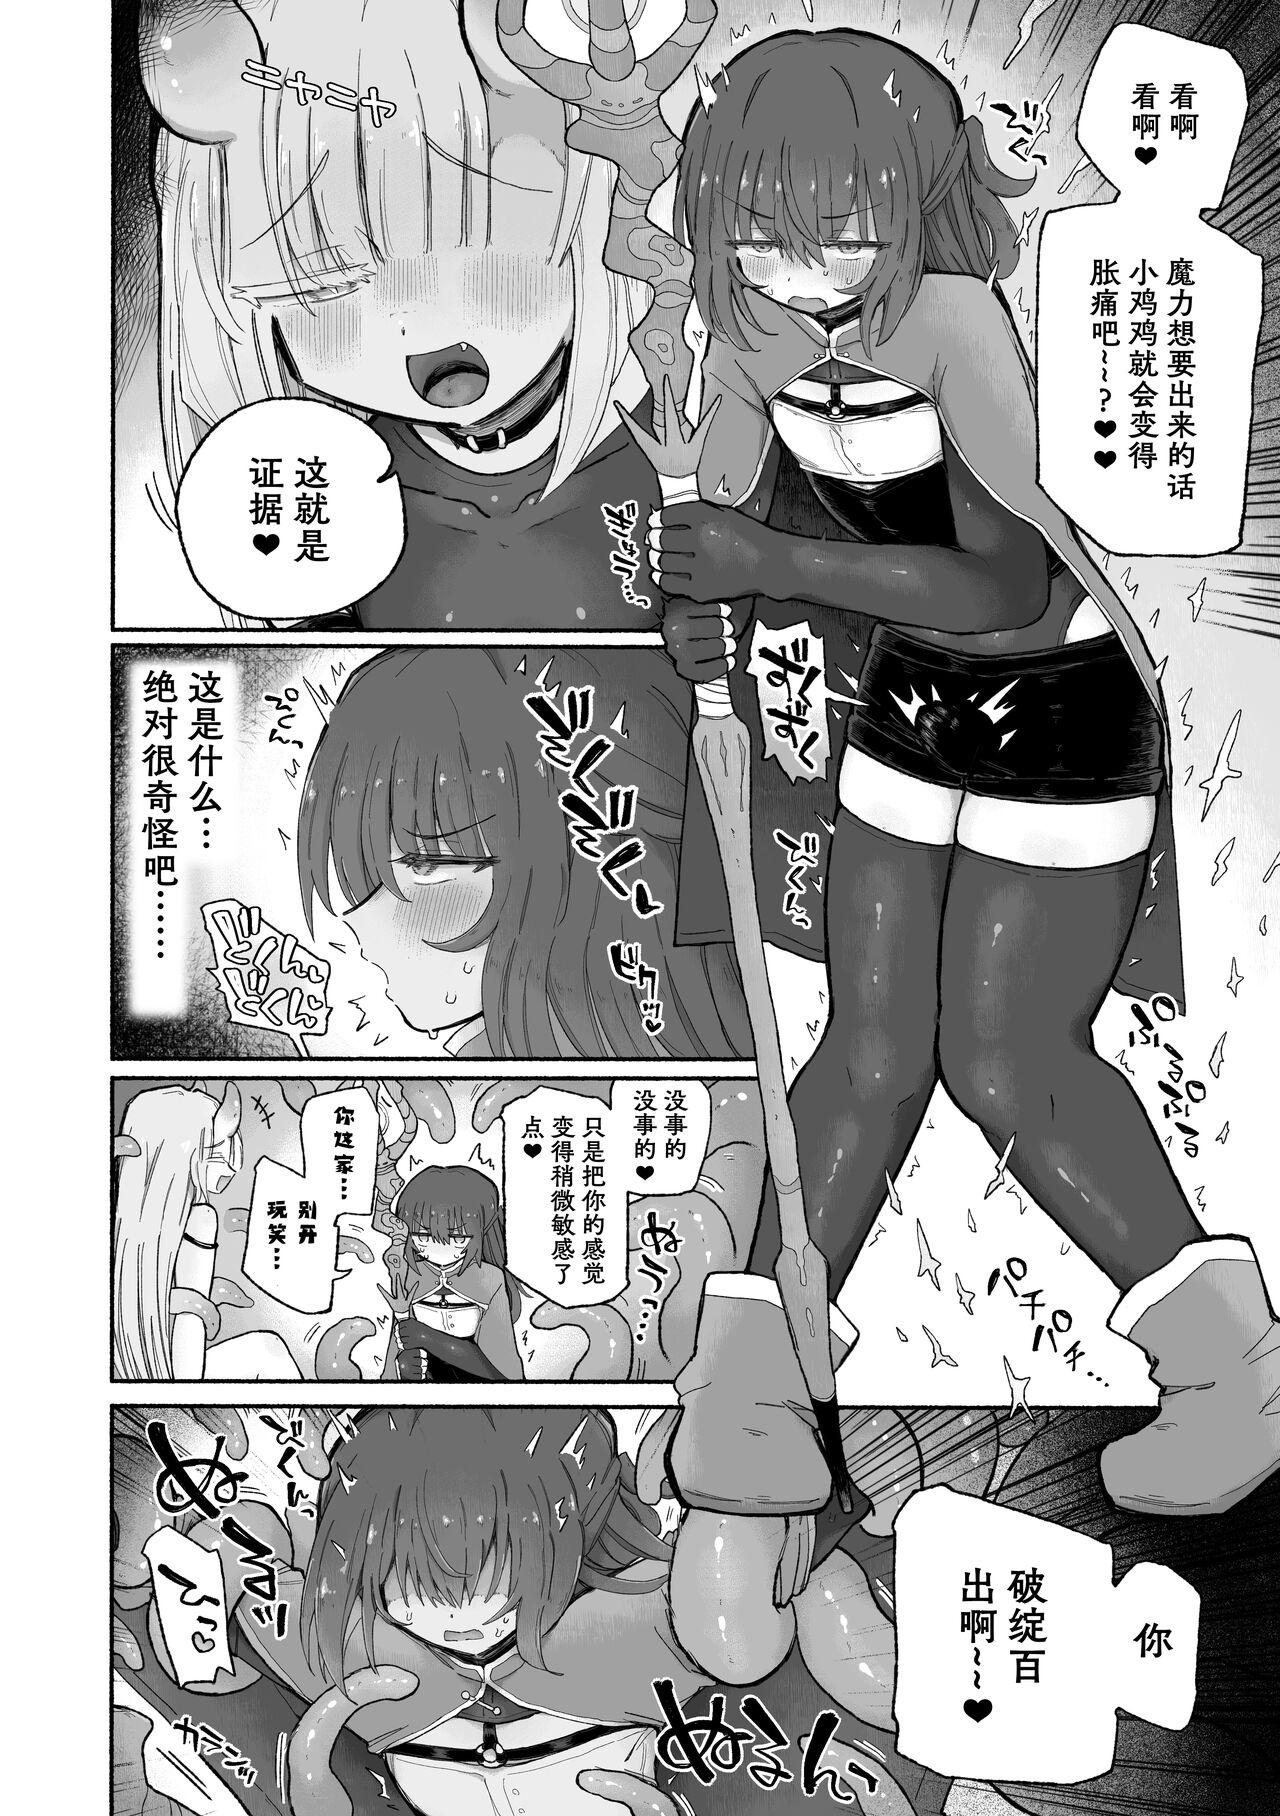 Anime Do hamari chui no kyosei danjon! 〜Mugen shasei no kairaku jigoku e yokoso〜 - Original Soapy Massage - Page 9